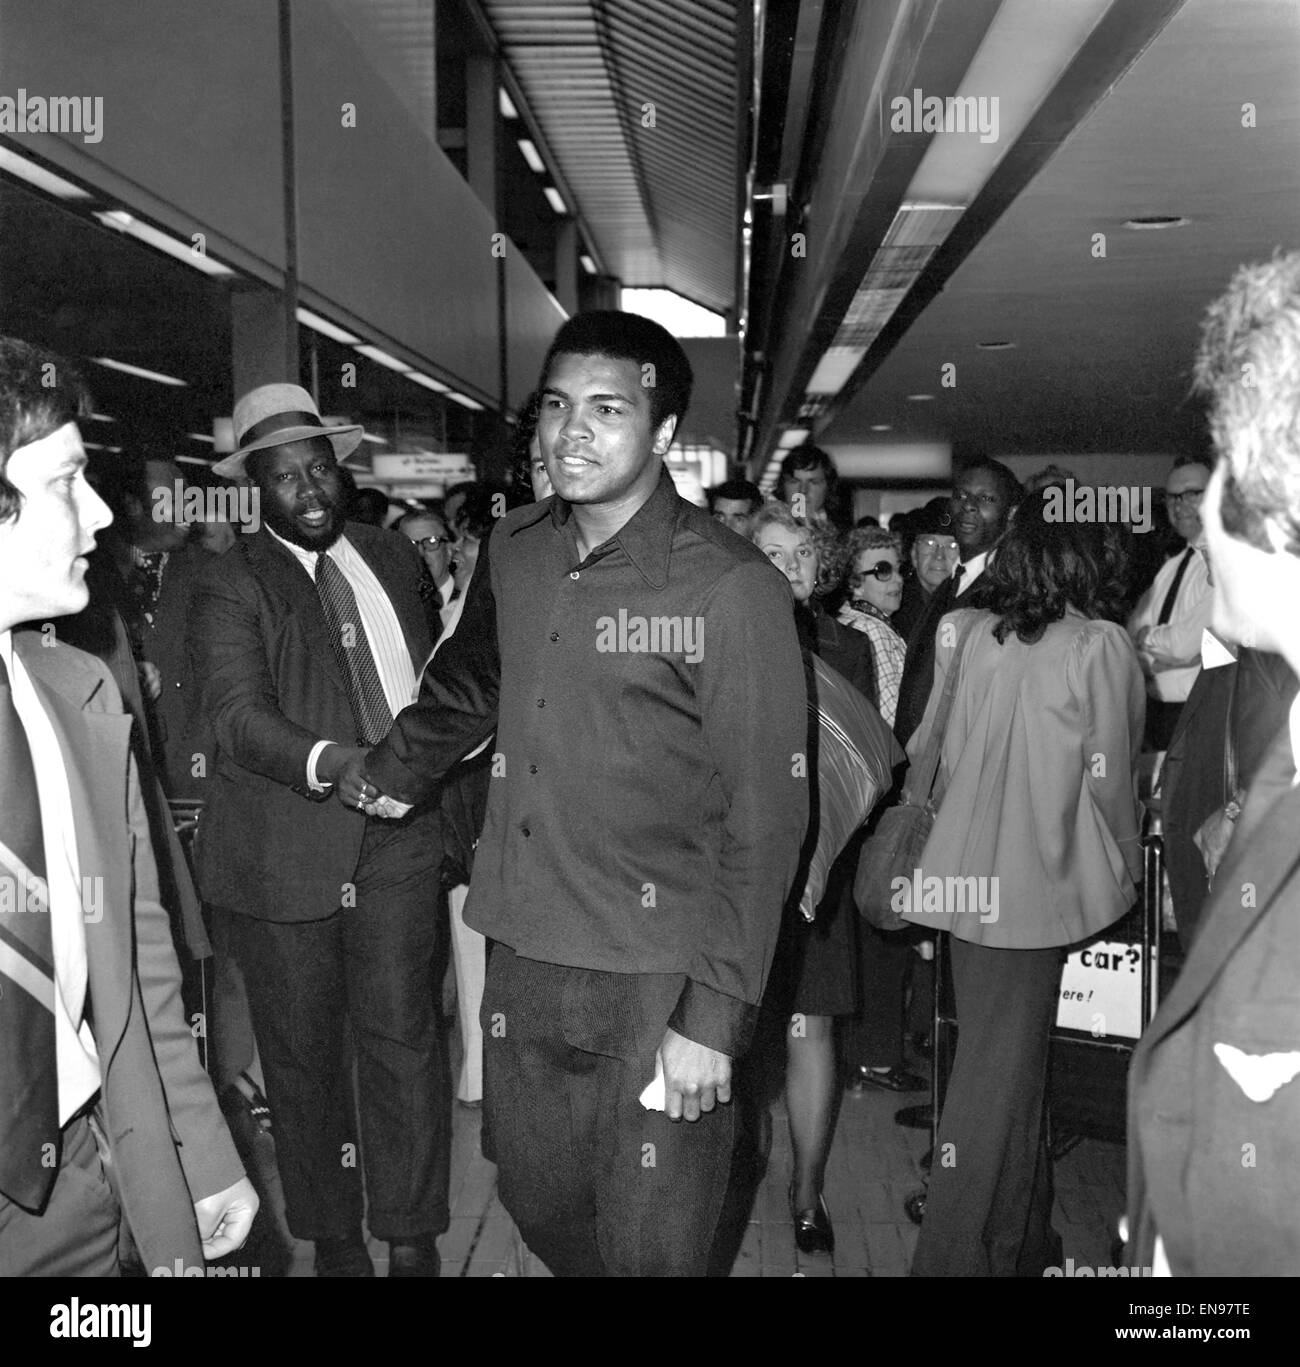 Boxer Cassio argilla. Heavyweight boxer Cassio Clay arrivati all' Aeroporto di Heathrow sulla sua strada verso lo Zaire per la sua lotta con George Foreman. Egli ha dovuto fermare a Londra per ordinare il suo passaporto, che aveva dimenticato. Cassio argilla (Muhammad Ali) a Heathrow Airpor Foto Stock